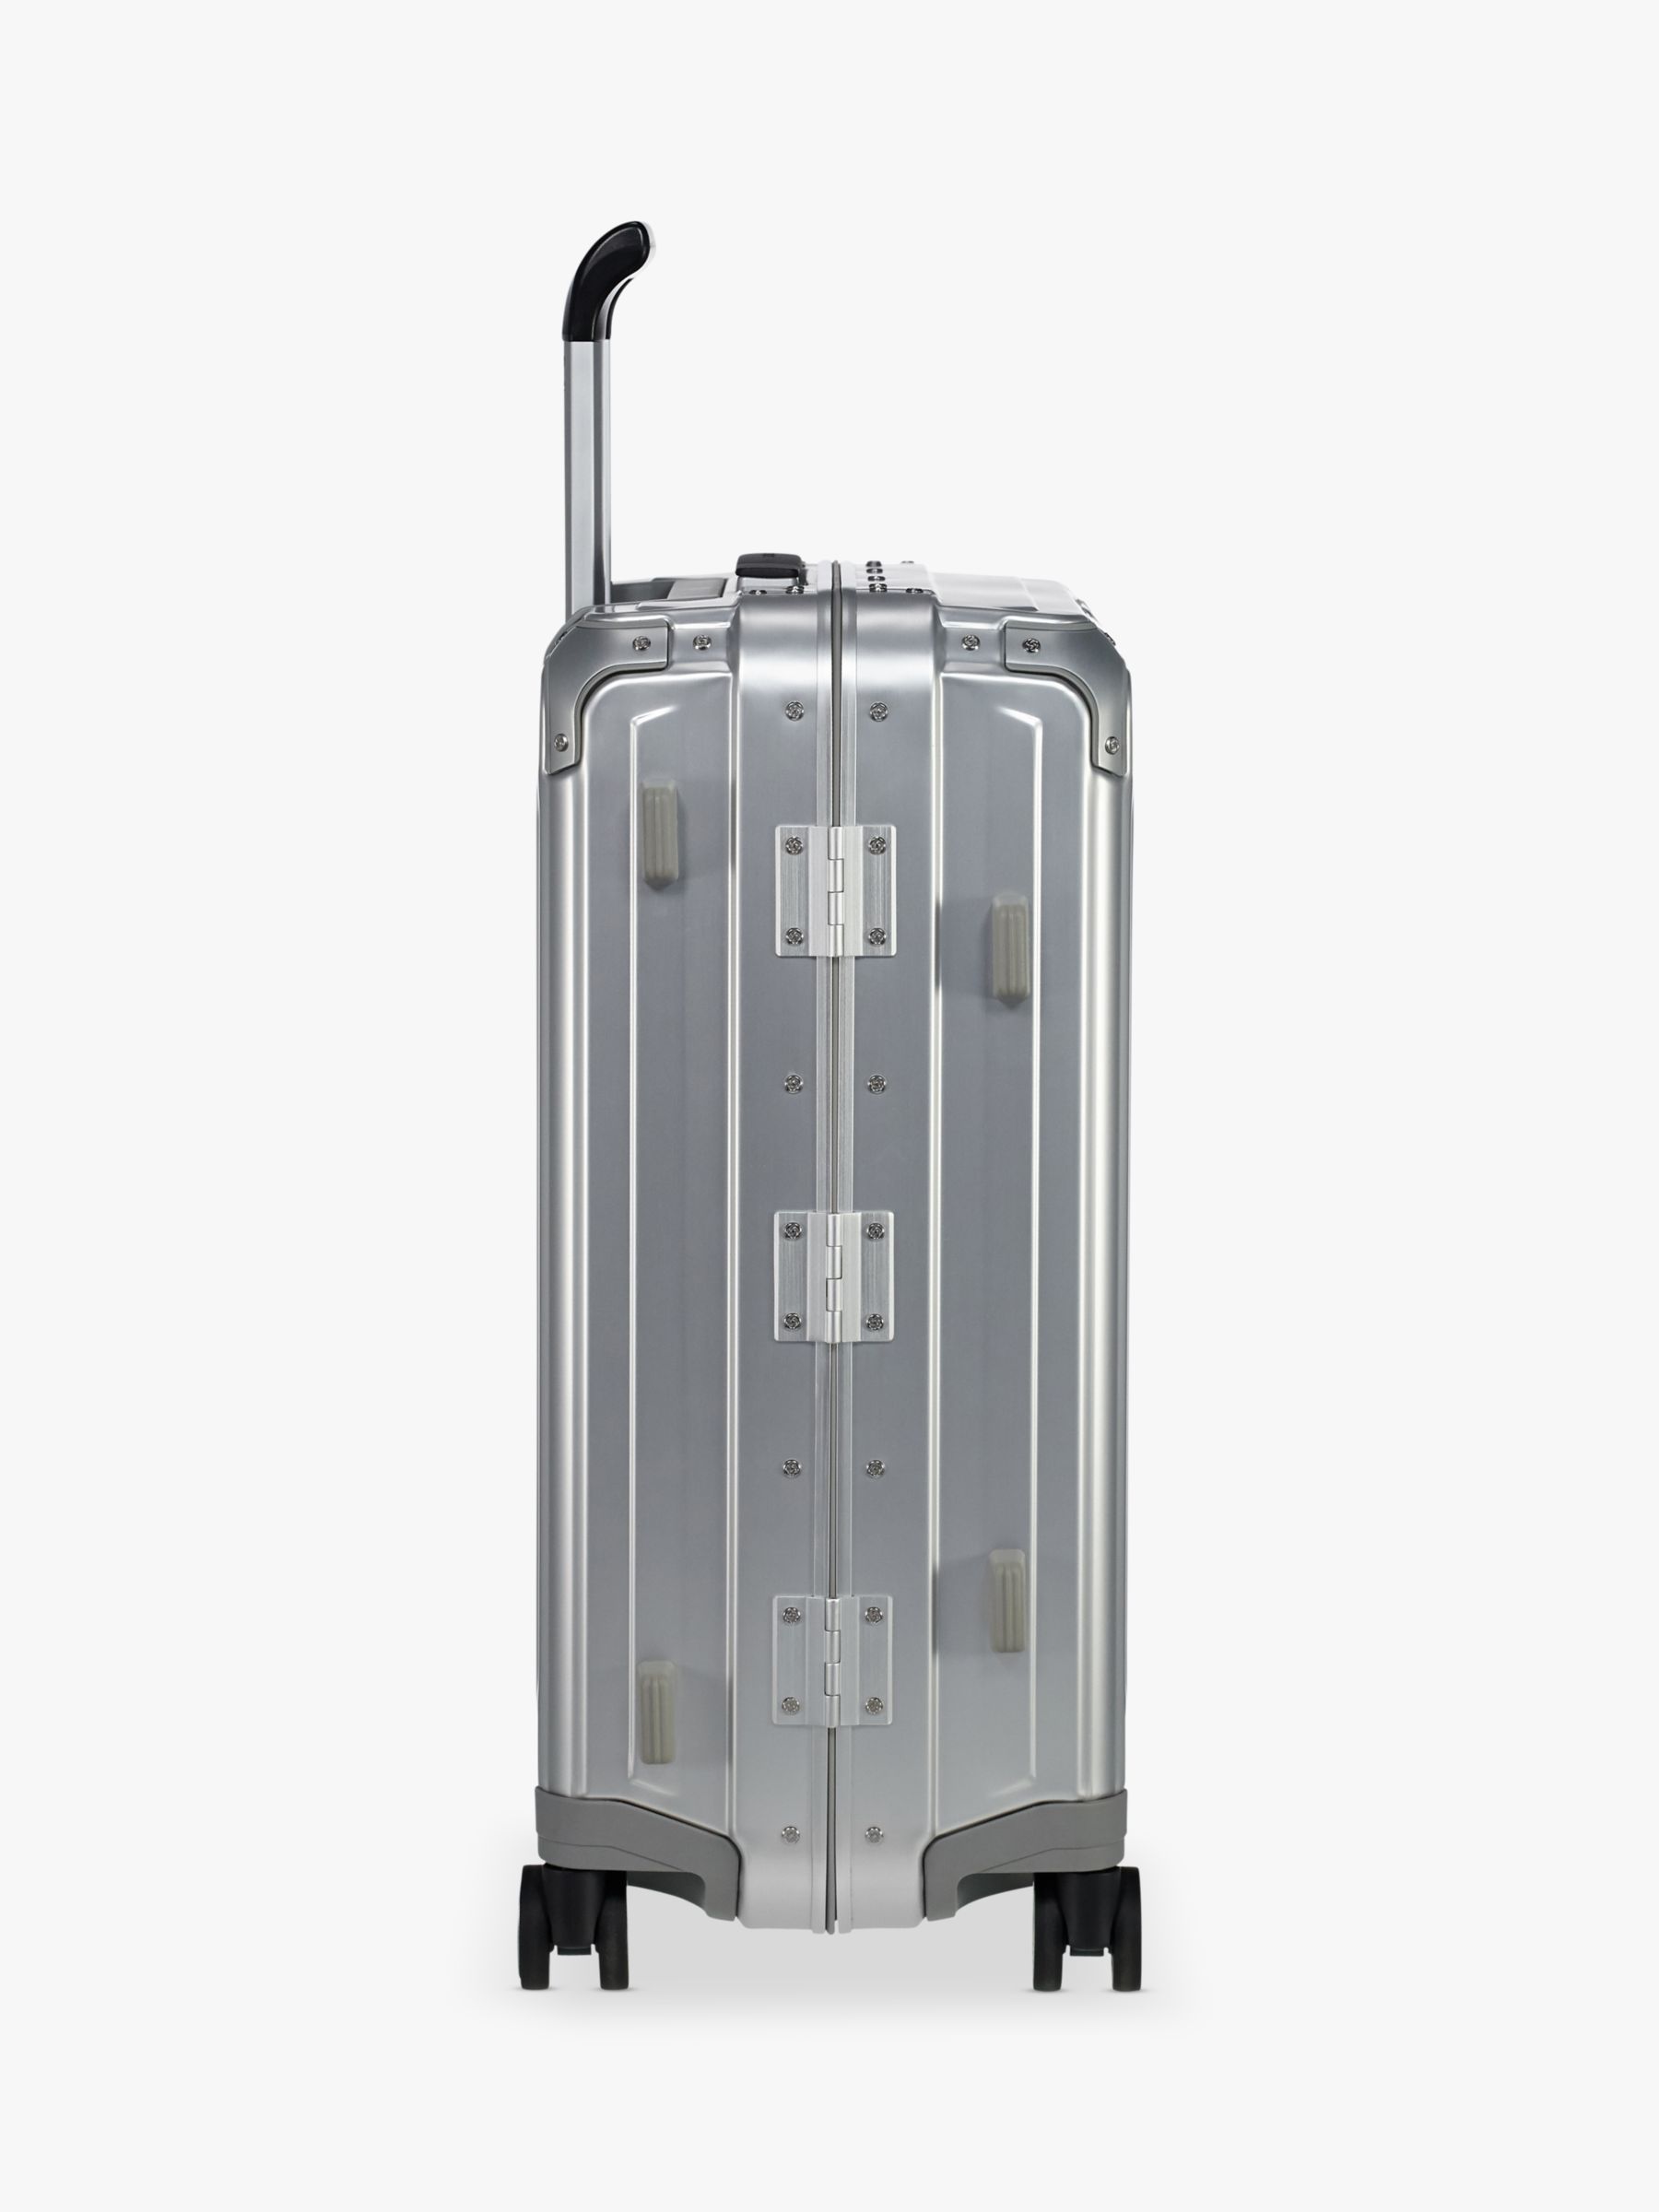 Samsonite Lite-Box 55cm 4-Spinner Wheel Aluminium Suitcase, Metallic Silver